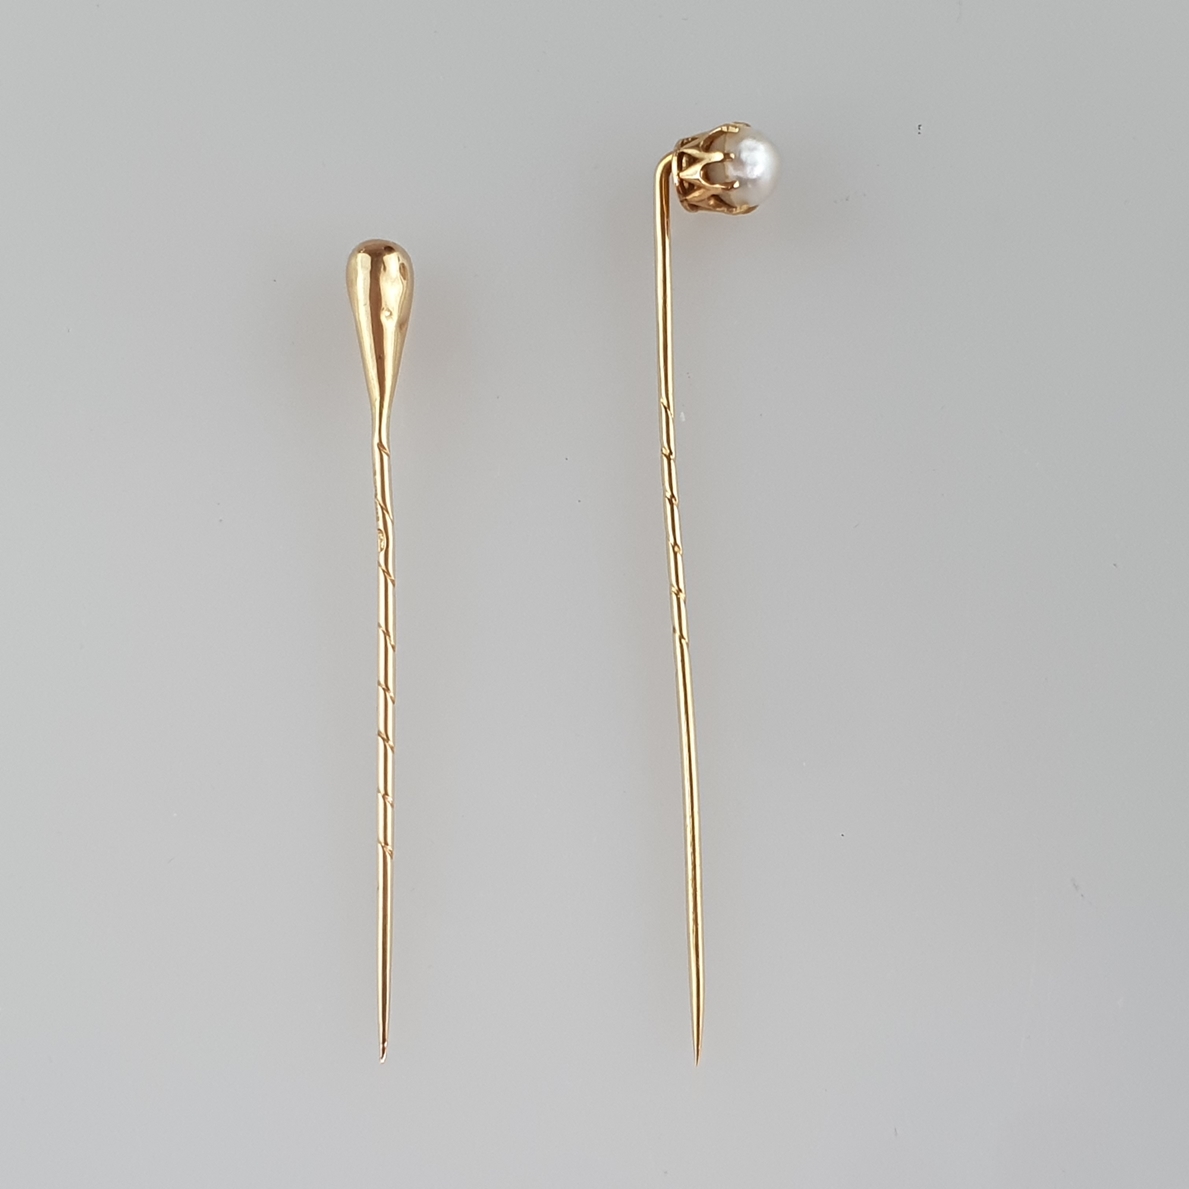 Zwei Krawattennadeln - 18Kt-Gelbgold, 1x Perlenbesatz, L.ca.5,8 bzw. 6,5cm, Gesamtgewicht ca. 2,6 g - Image 4 of 4